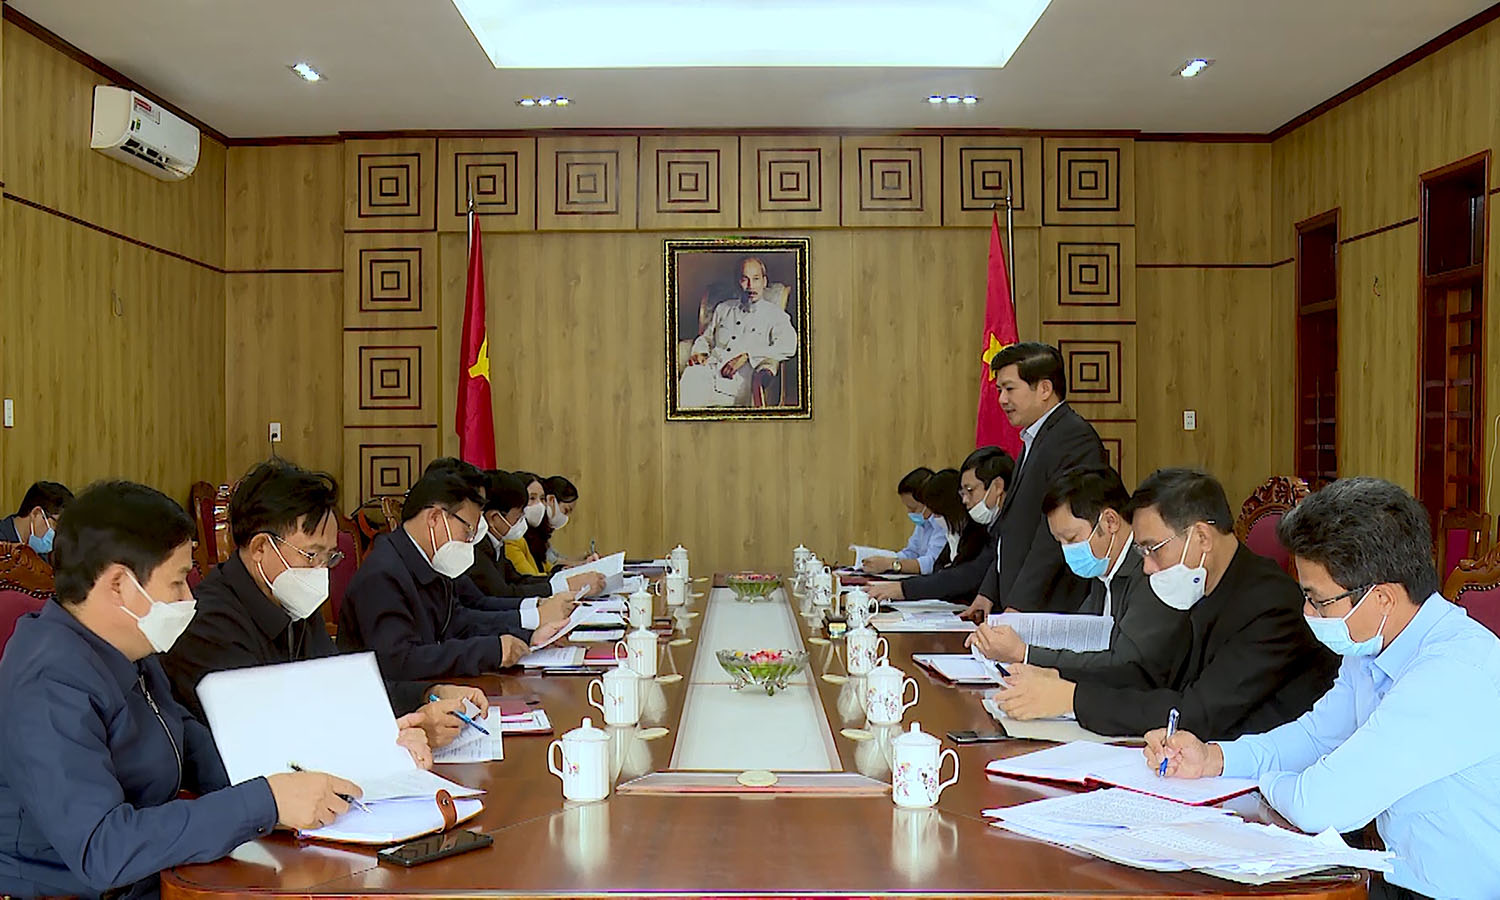 Đồng chí Trưởng ban Tổ chức Tỉnh ủy Trần Vũ Khiêm phát biểu kết luận buổi làm việc